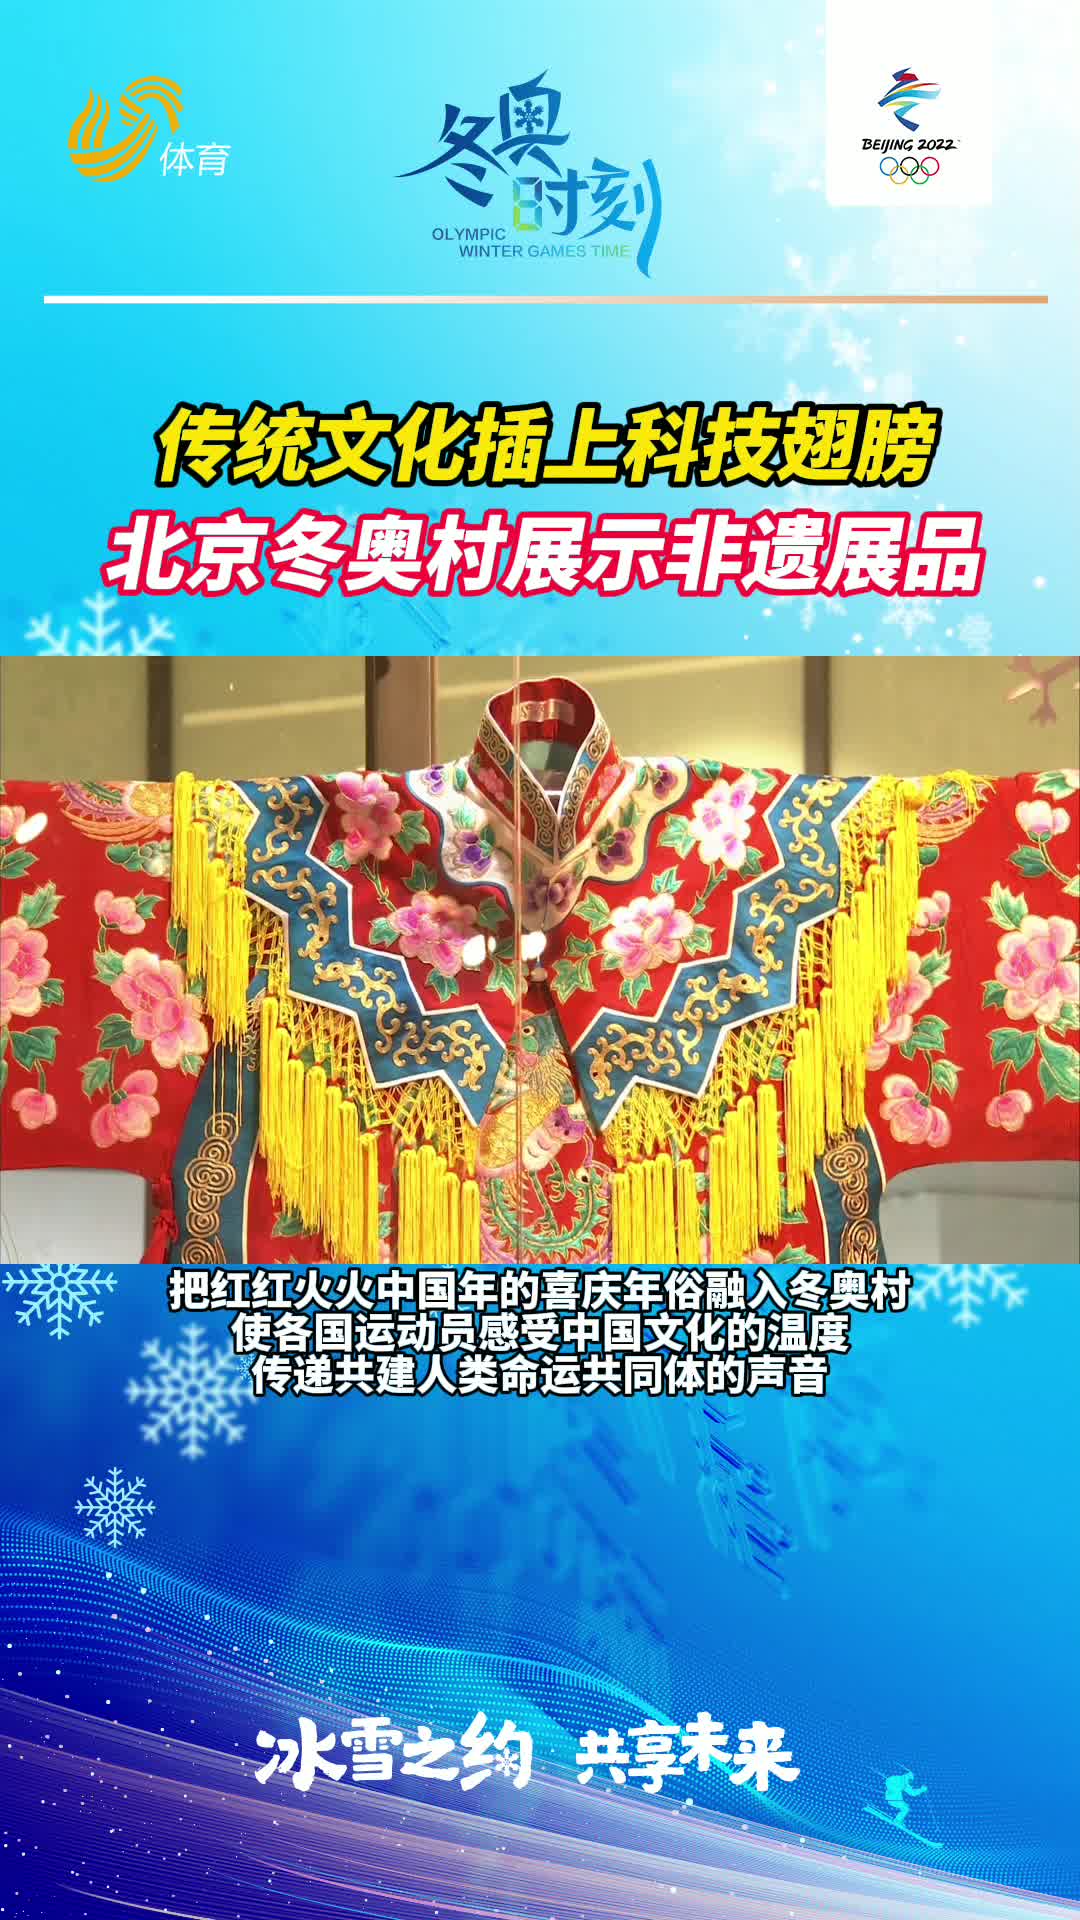 冬奥时刻丨传统文化插上科技翅膀 北京冬奥村展示非遗展品